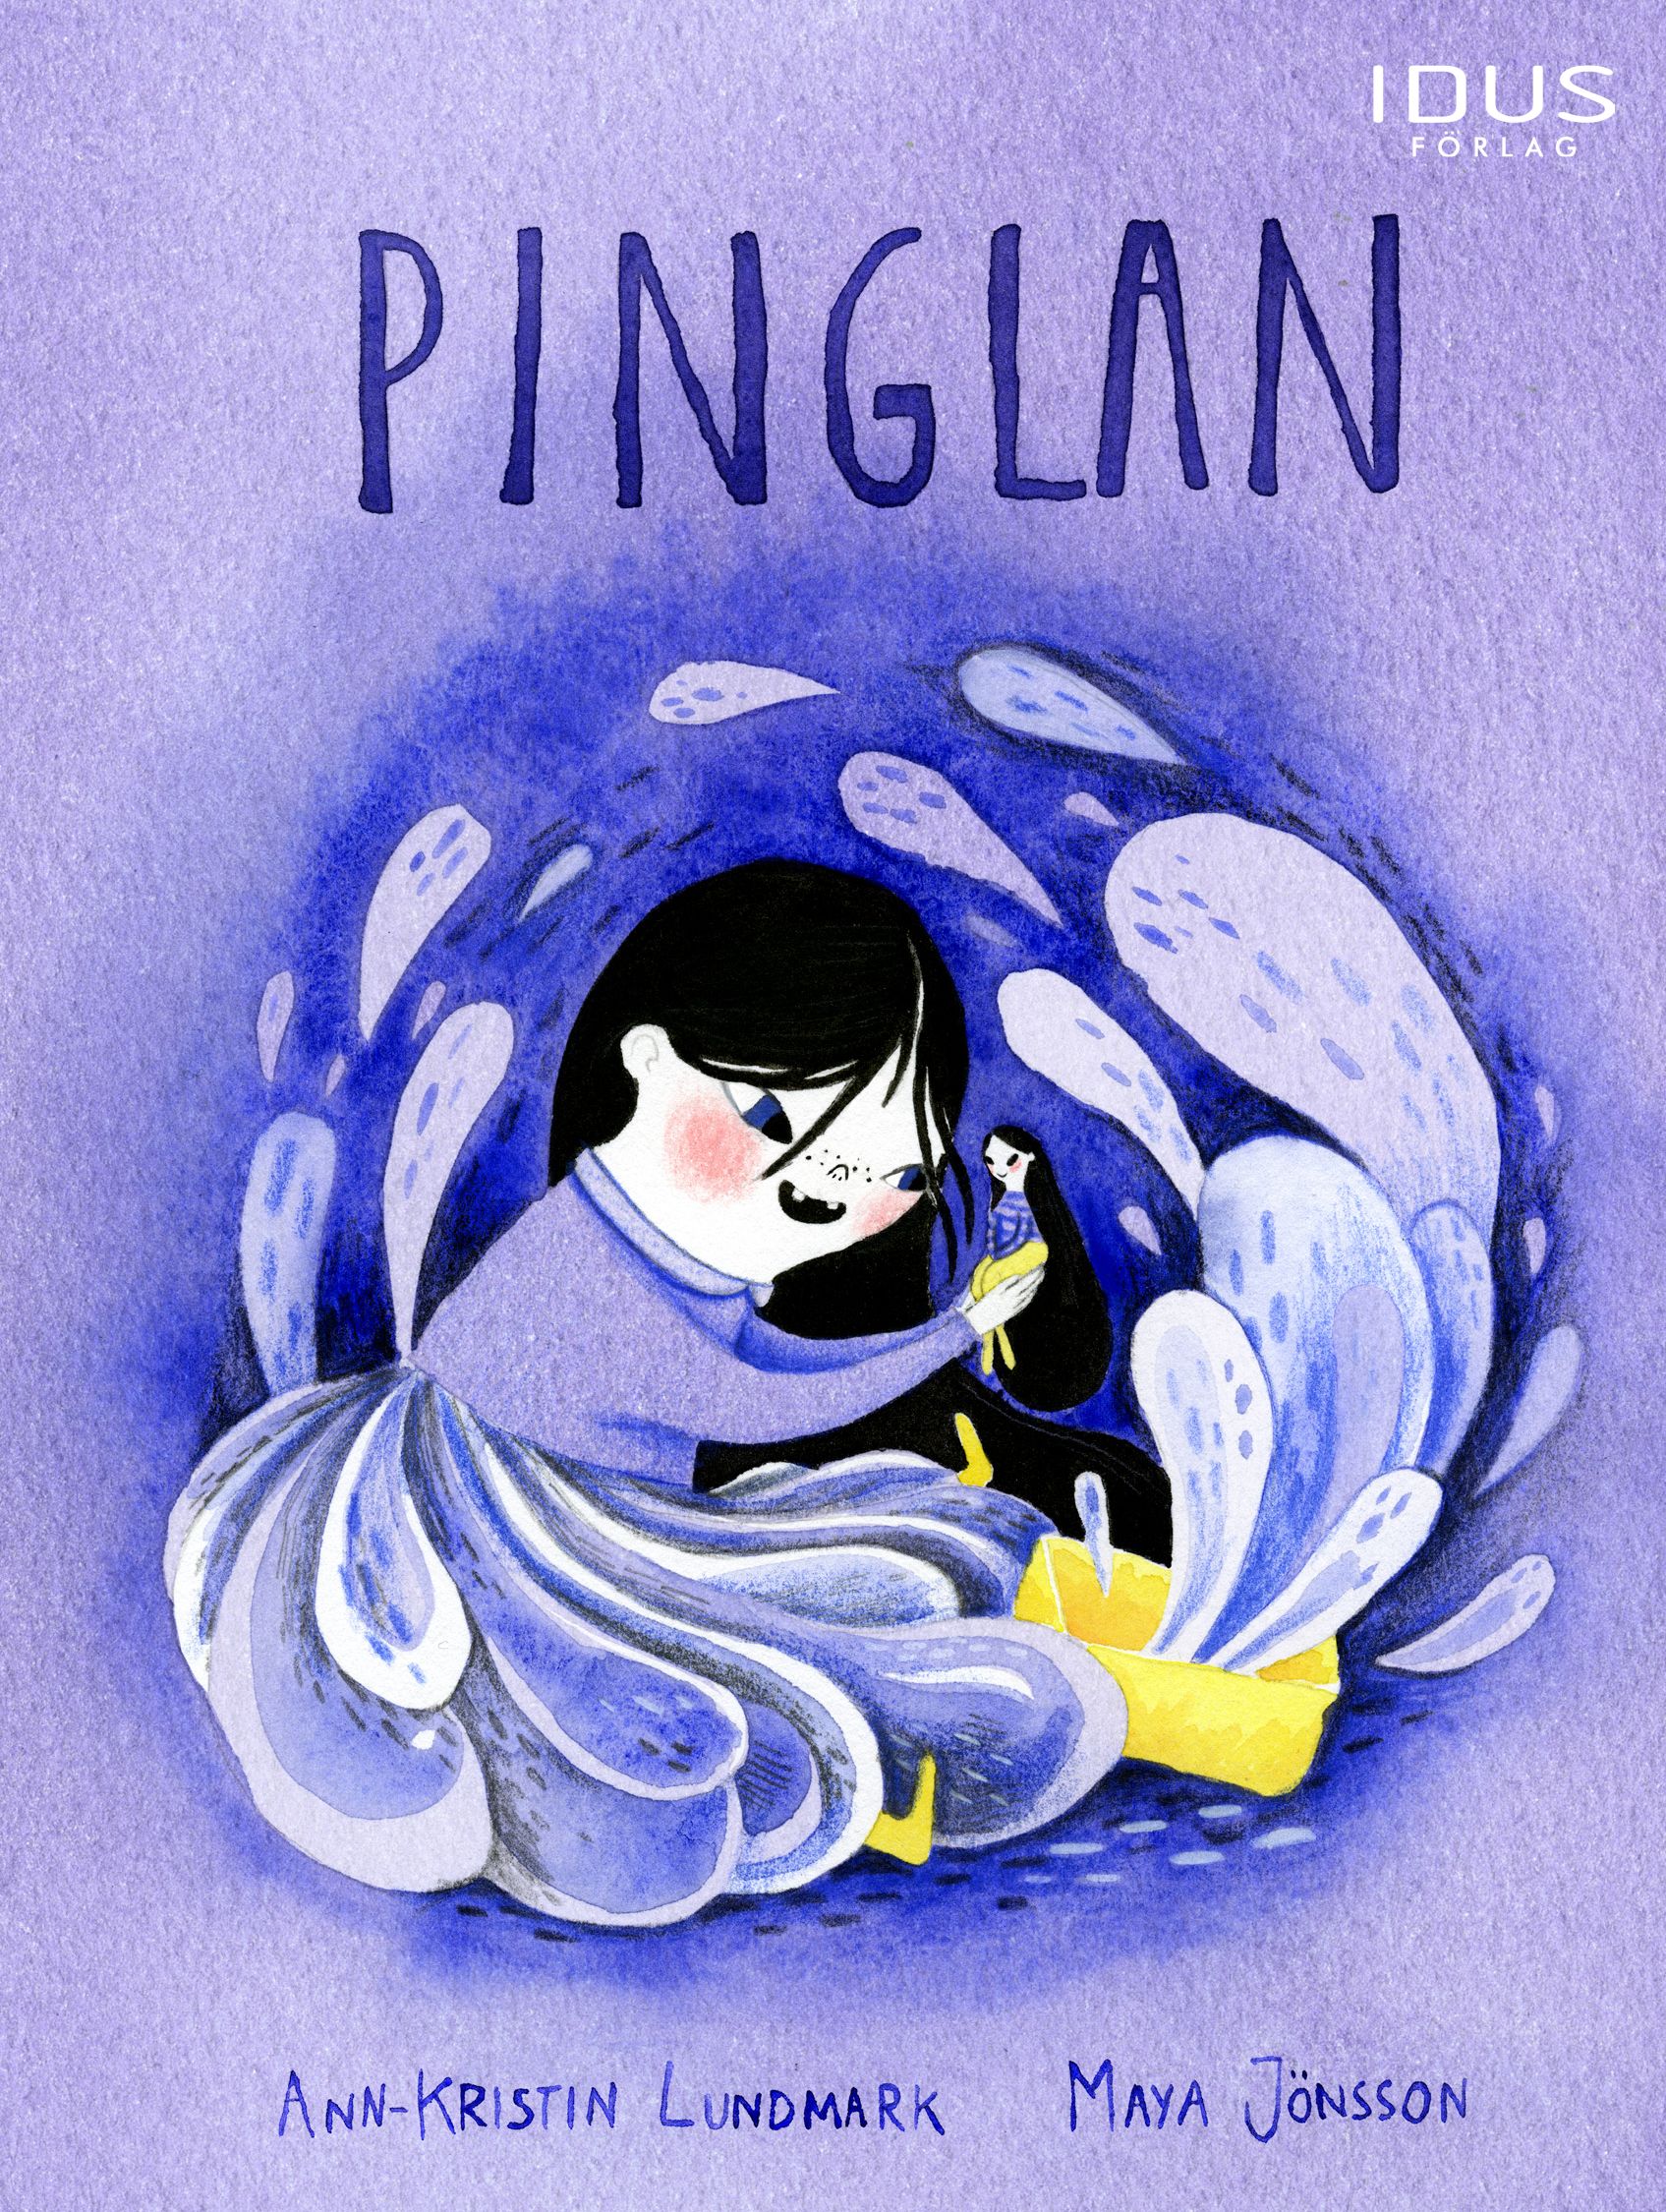 Pinglan, e-bog af Ann-Kristin Lundmark